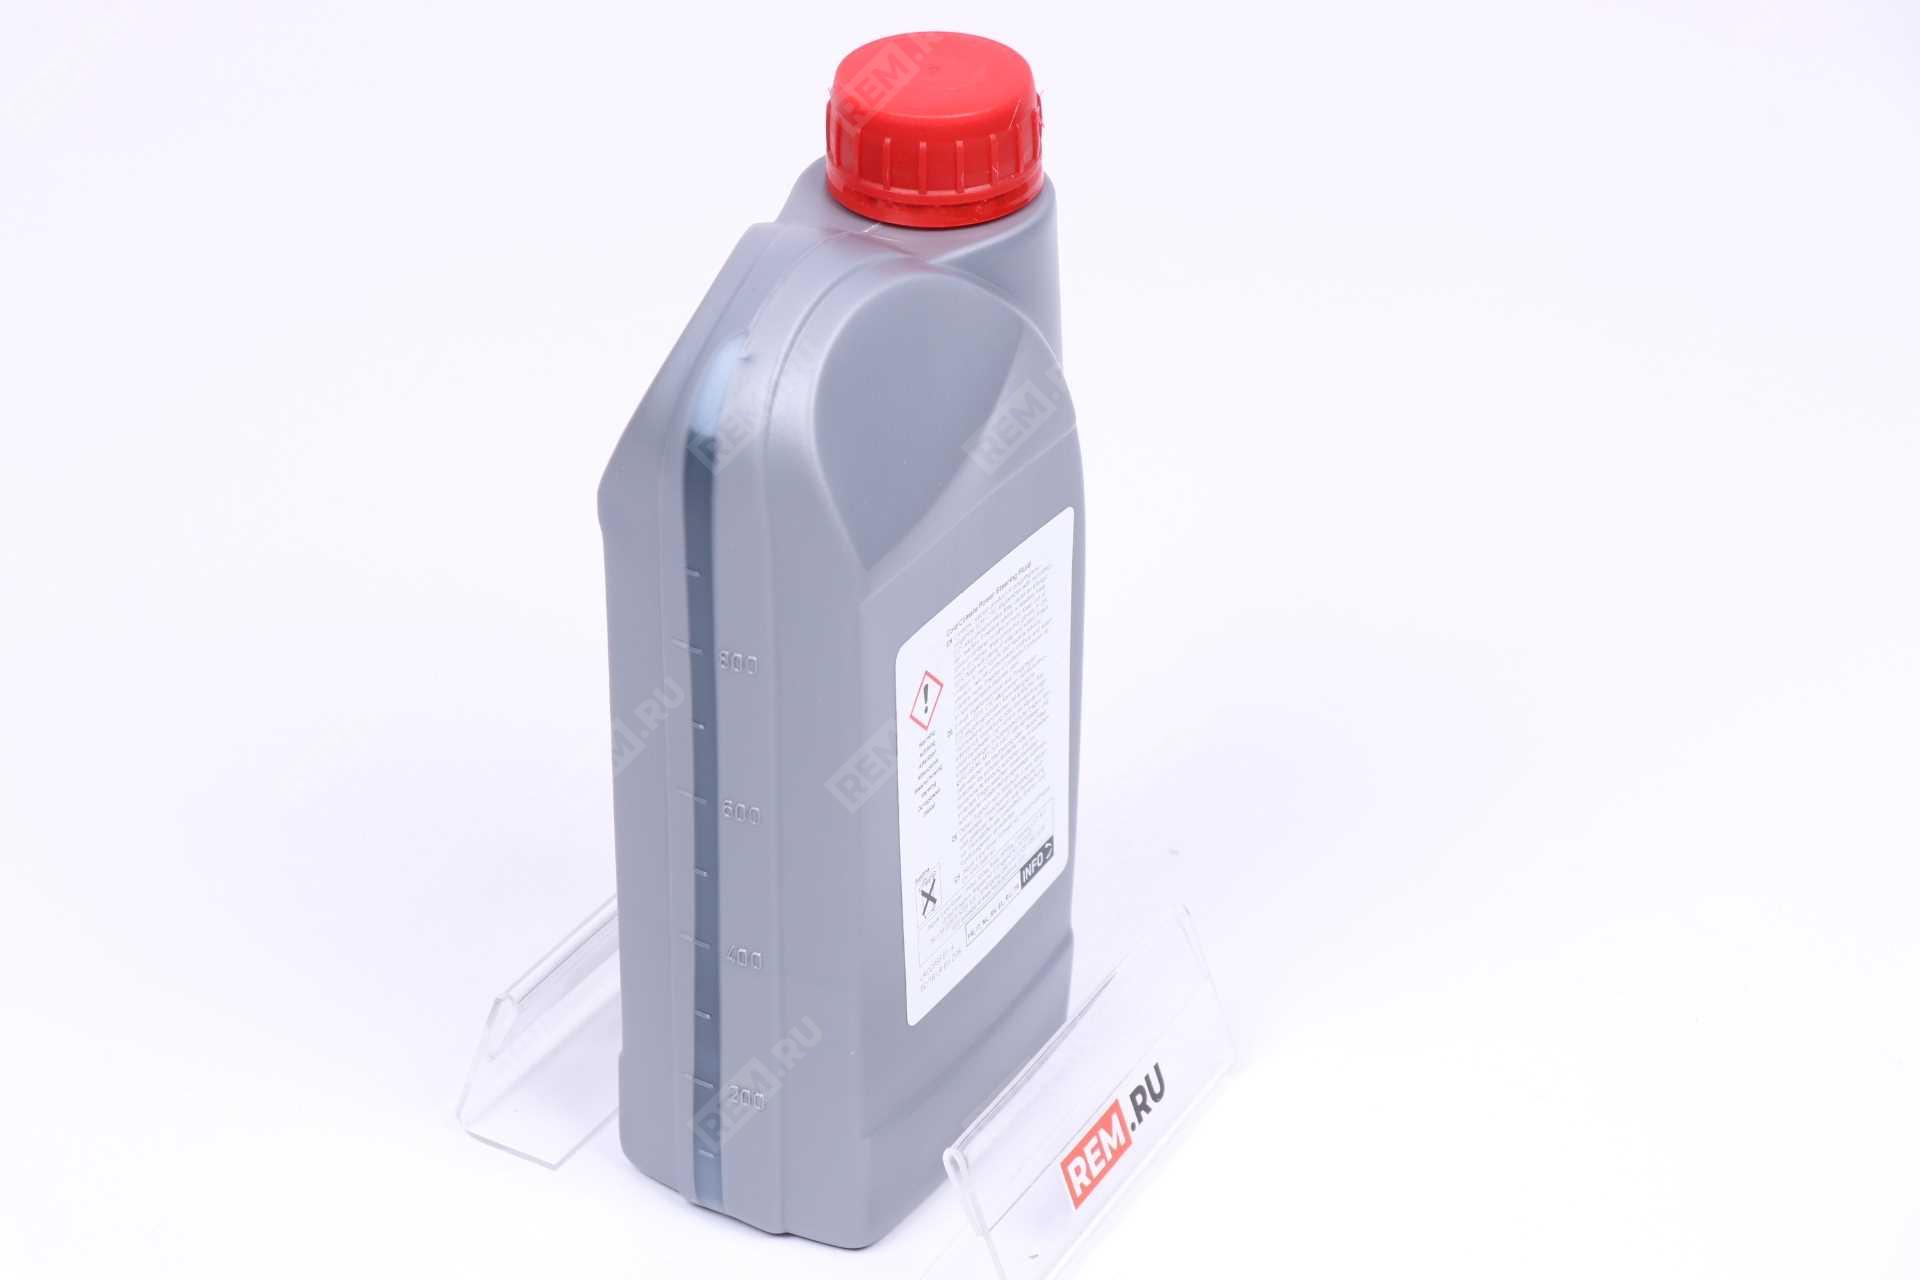  STC50519  жидкость гур и антикрена, 1л (фото 2)